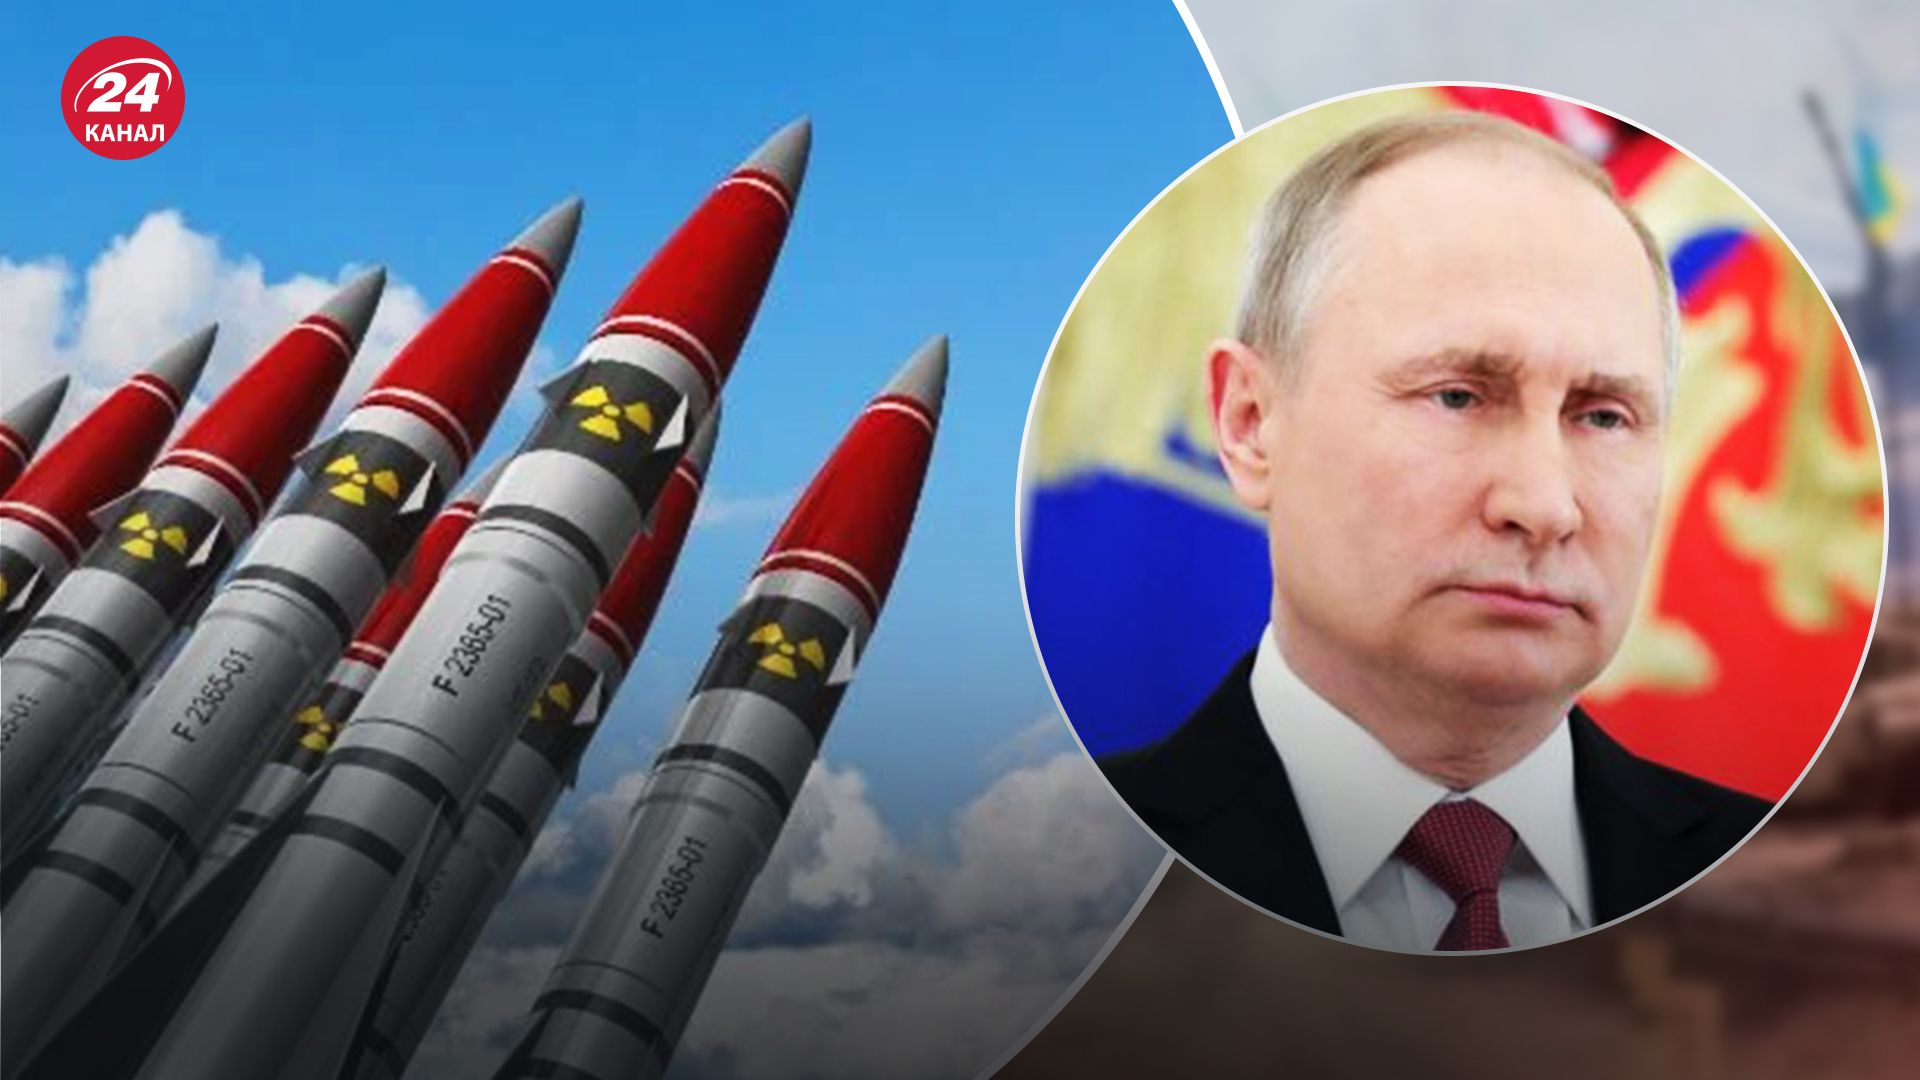  Захід має достатньо способів реагувати на ядерні спекуляції Росії